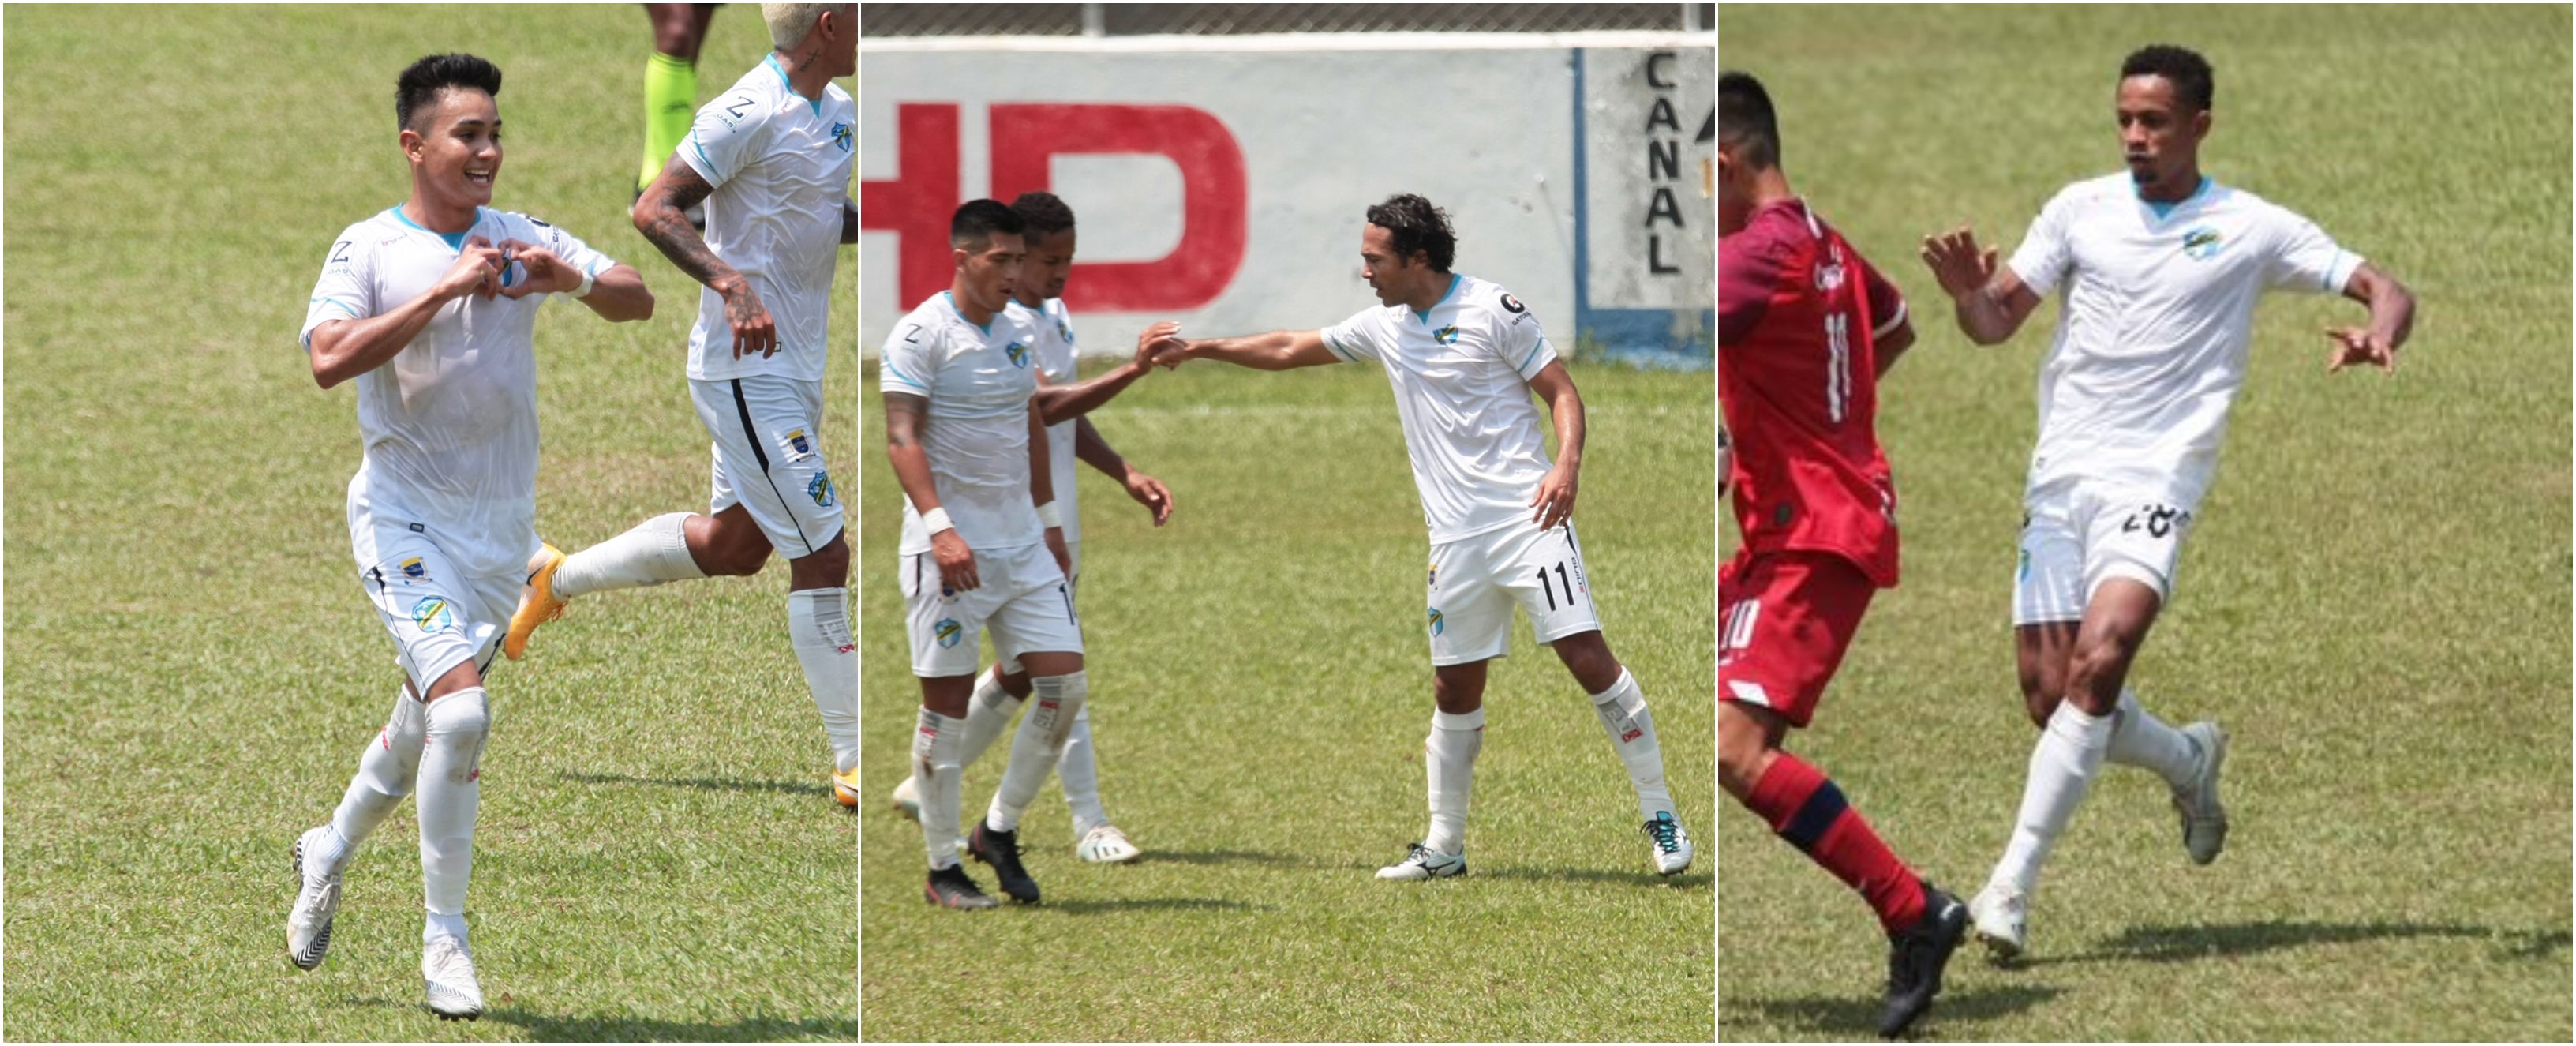 Óscar Santis, Agustín Herrera y Stheven Robles marcaron los goles para los cremas. José Corena dio dos asistencias. Foto Prensa Libre:  Club Comunicaciones.